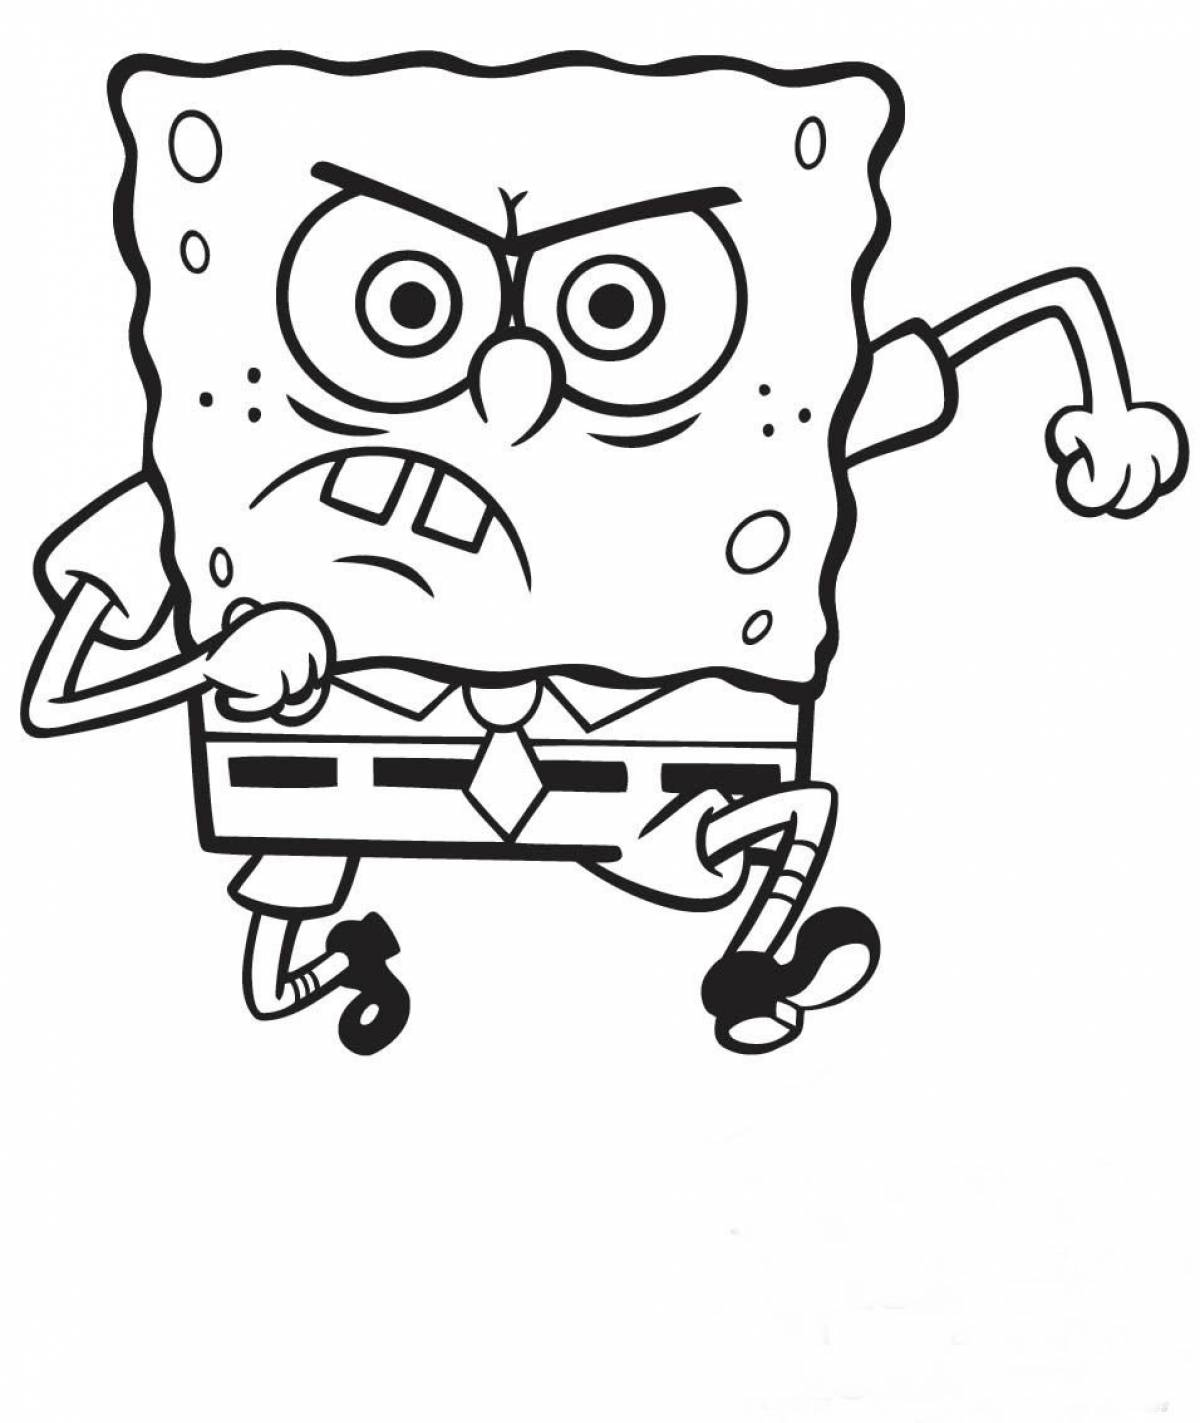 Spongebob pattern #3